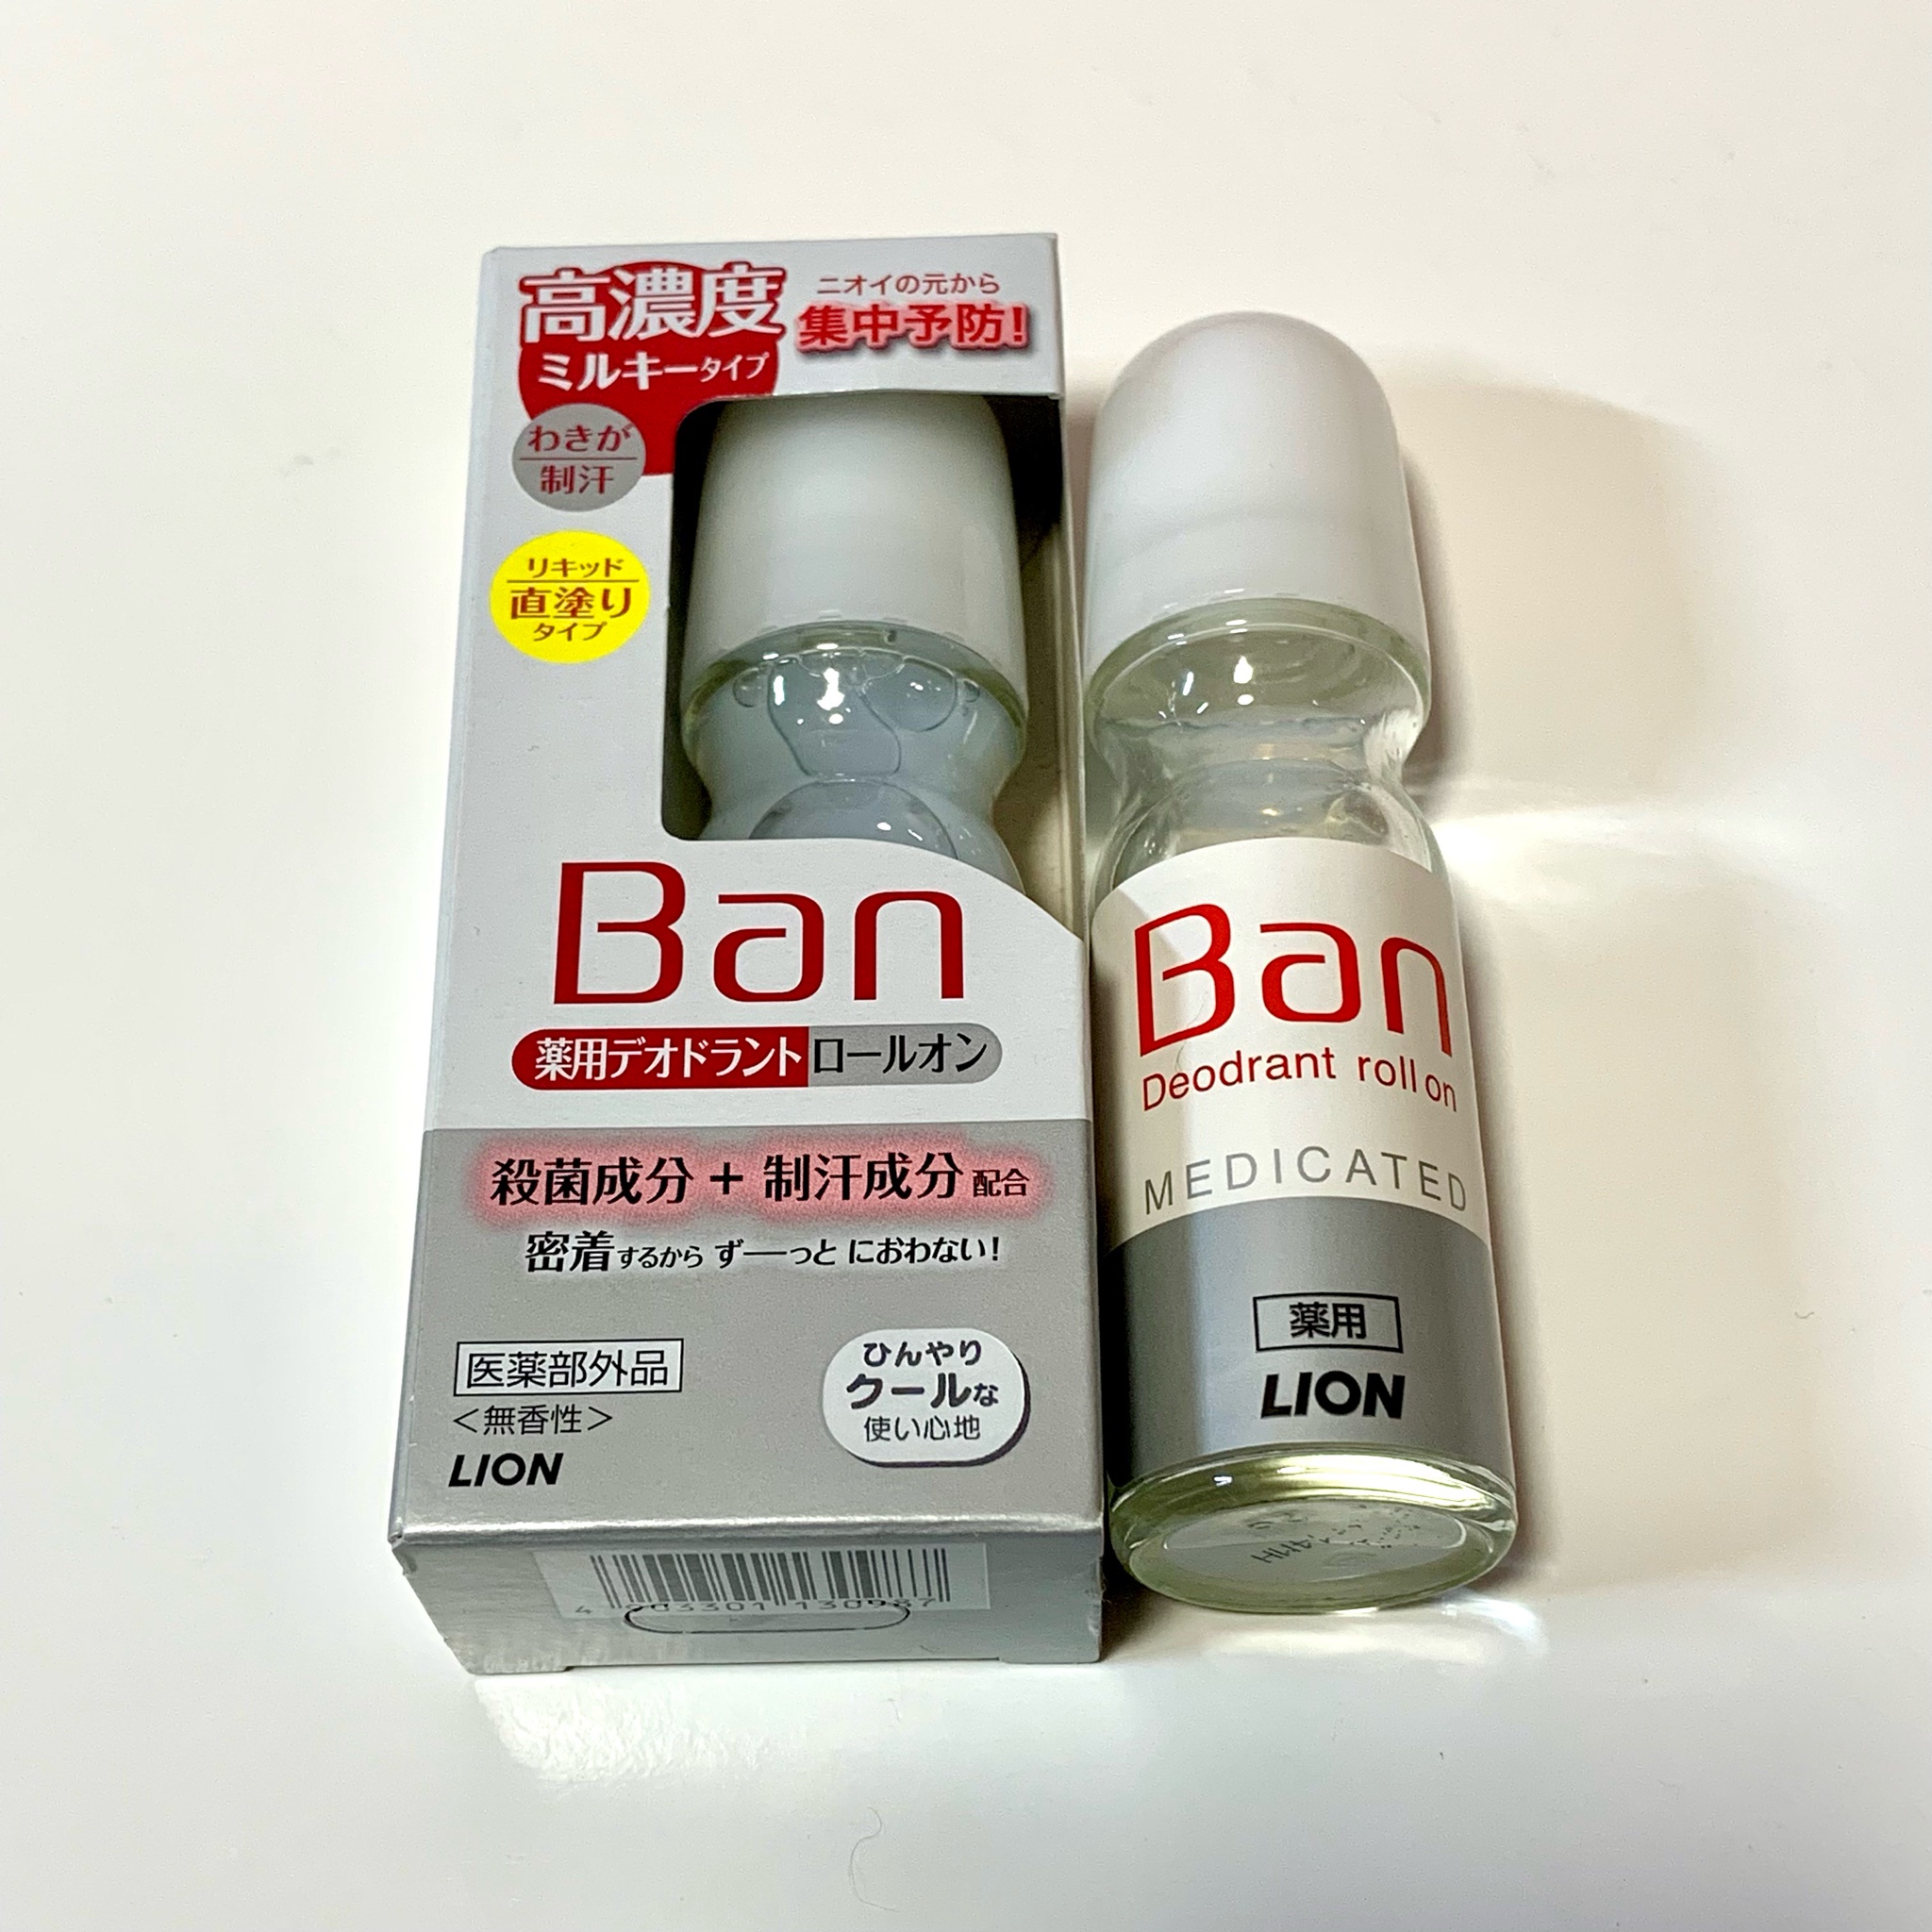 Ban / 薬用デオドラントロールオン 高濃度ミルキータイプの公式商品 